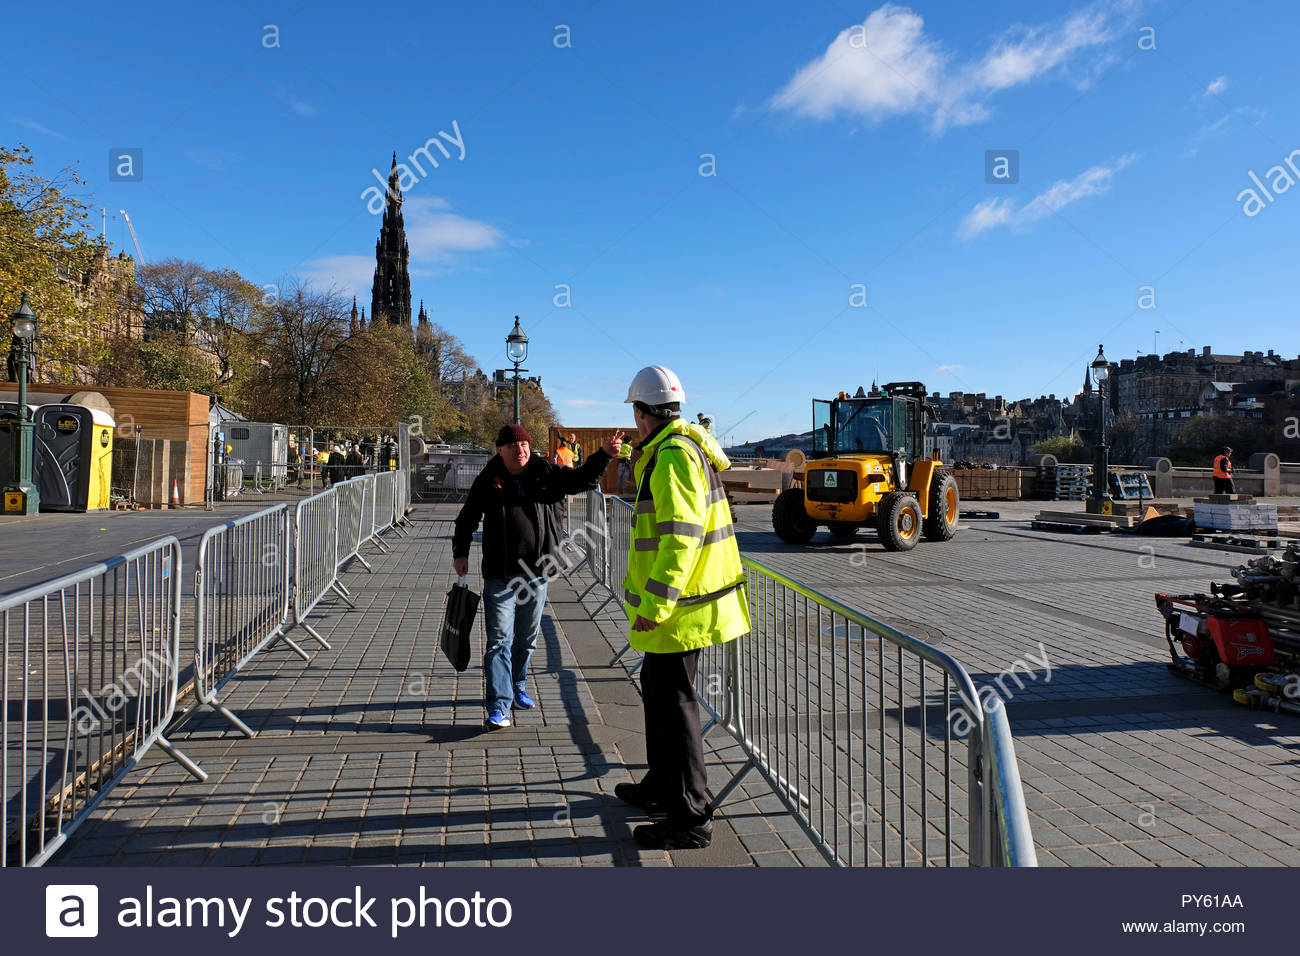 Edinburgh, Regno Unito. 26 ottobre, 2018. Il tumulo chiuso dietro barriere con operai e macchinari pesanti facendo i preparativi per le feste di Natale. Credito: Craig Brown/Alamy Live News. Foto Stock